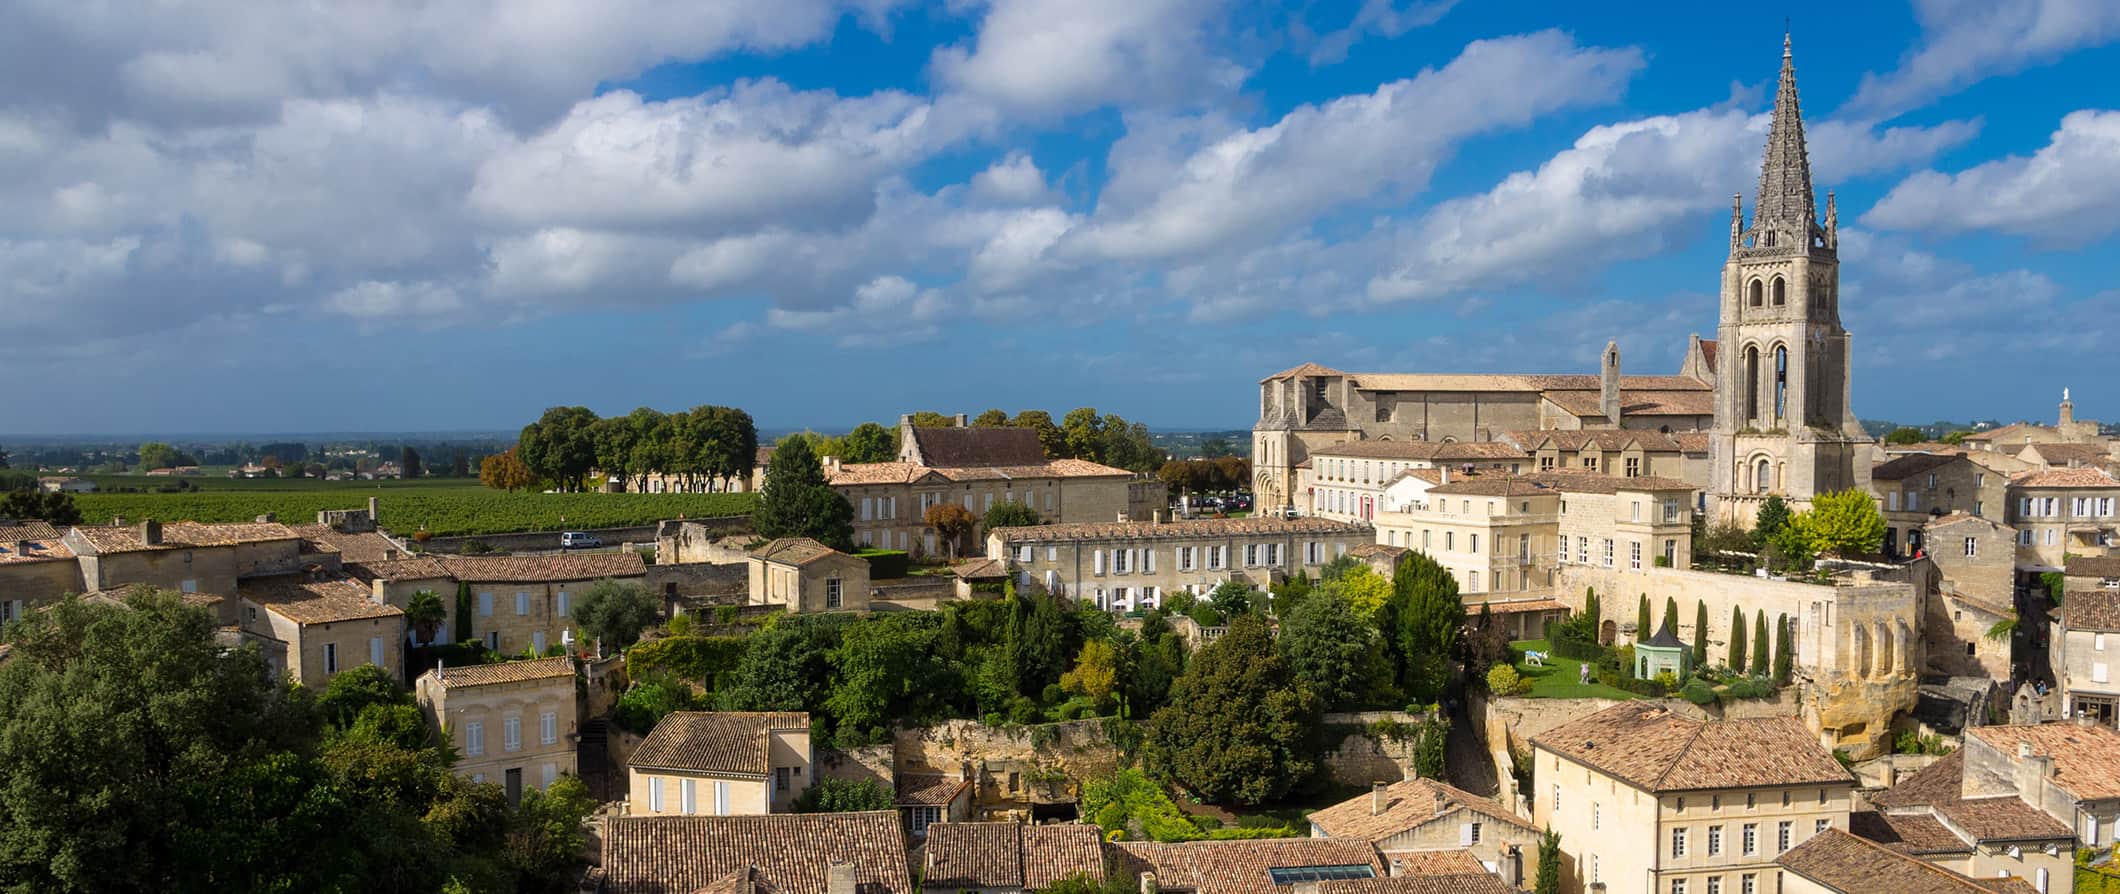 Telhados e horizonte de Bordeaux, França, com uma igreja imponente ao fundo em um dia ensolarado.